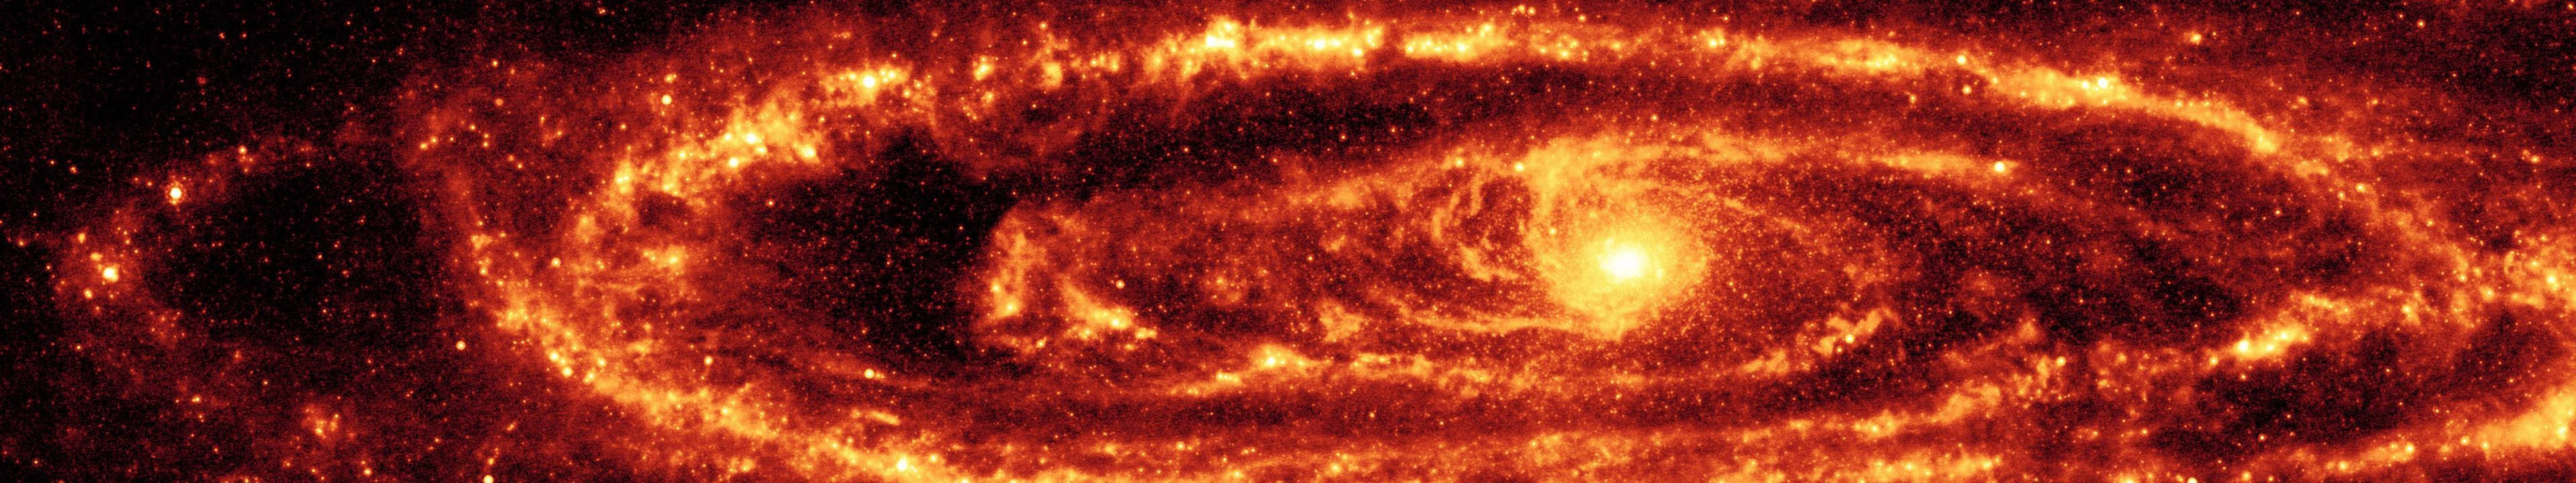 Red Andromeda Galaxy wallpaper.